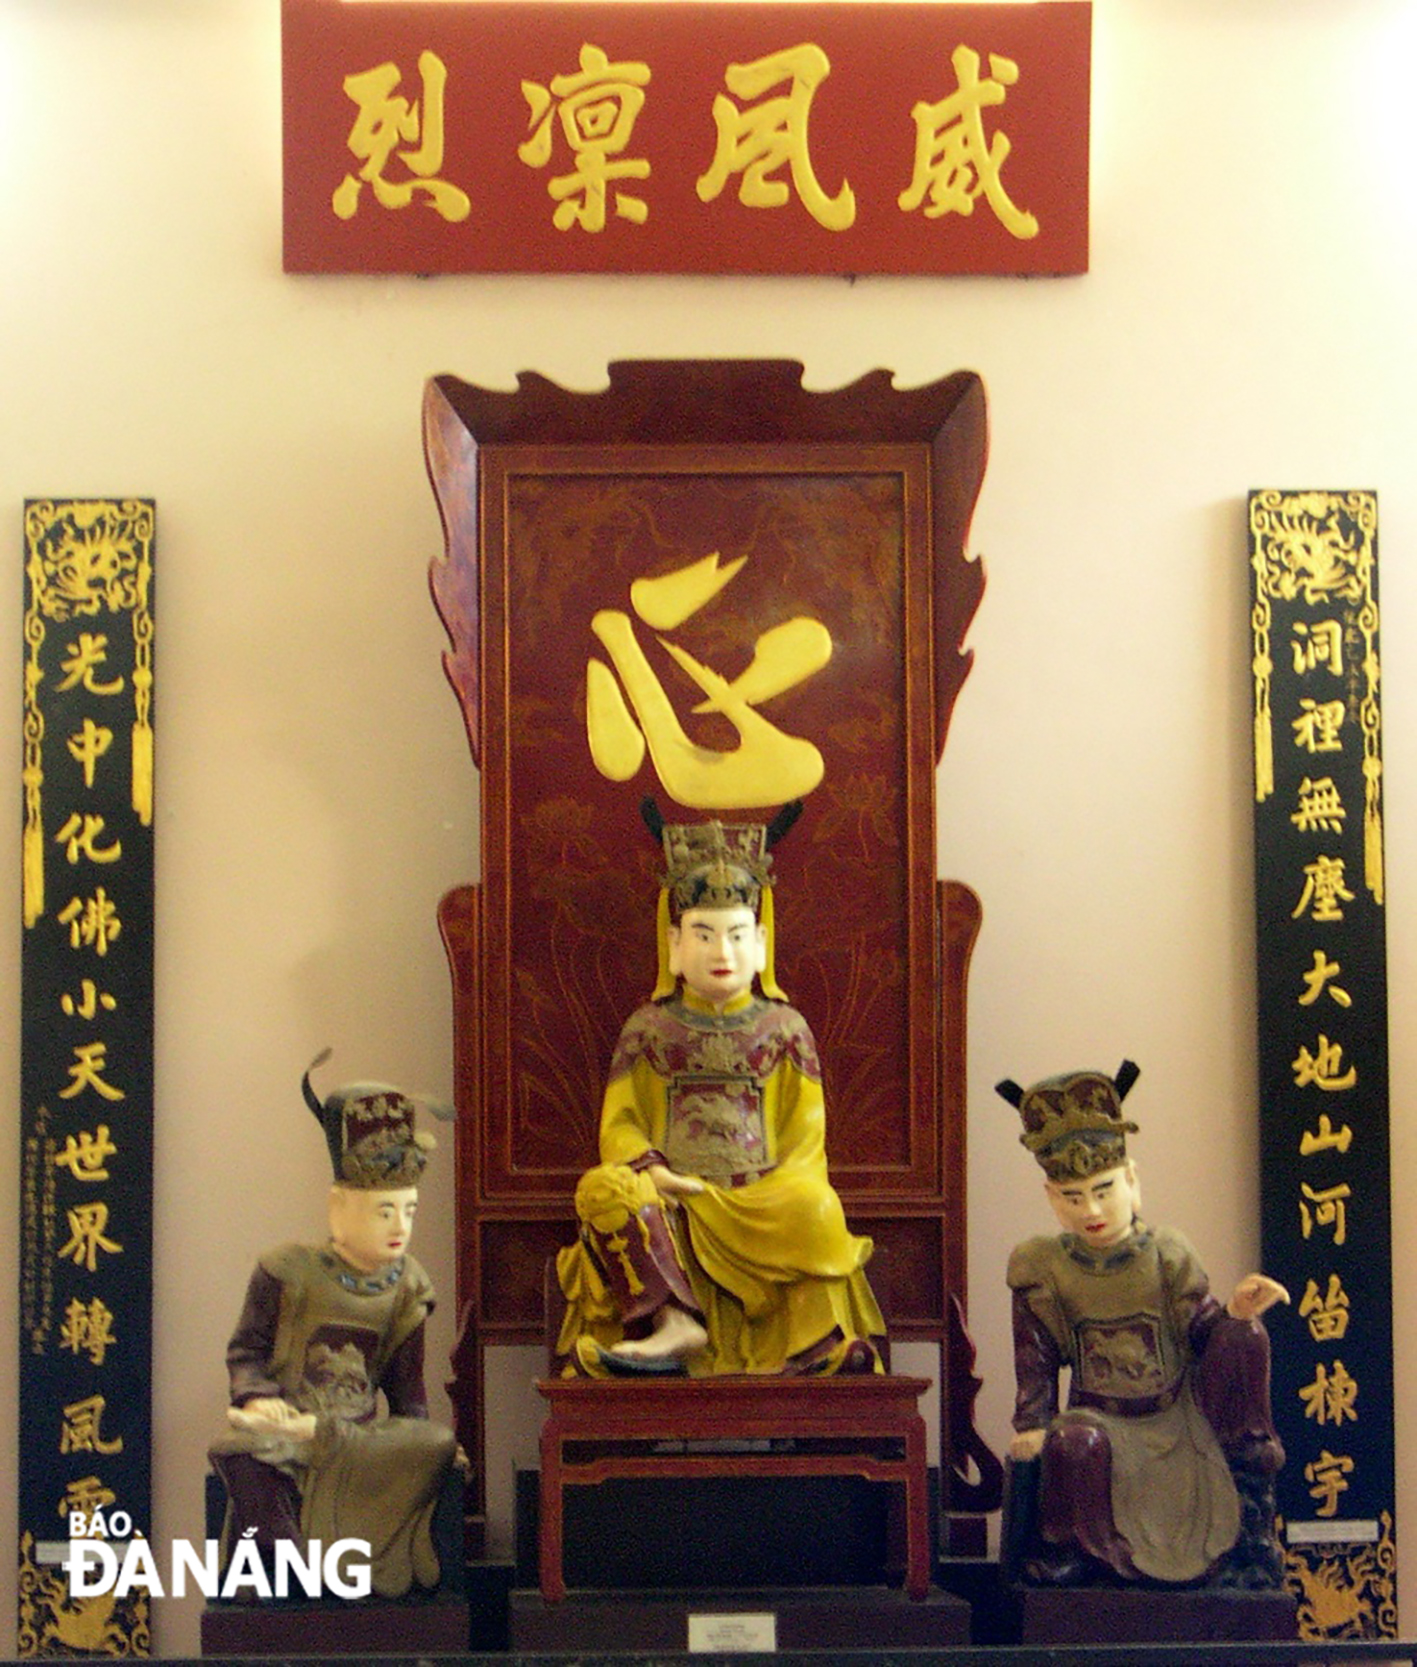 Công chúa Ngọc Hân viết “Ai tư vãn” khóc vua Quang Trung khi hoàng đế băng hà vào năm 1792. TRONG ẢNH: Tượng vua Quang Trung (giữa) tại Bảo tàng Quang Trung, Bình Định. Ảnh V.T.L